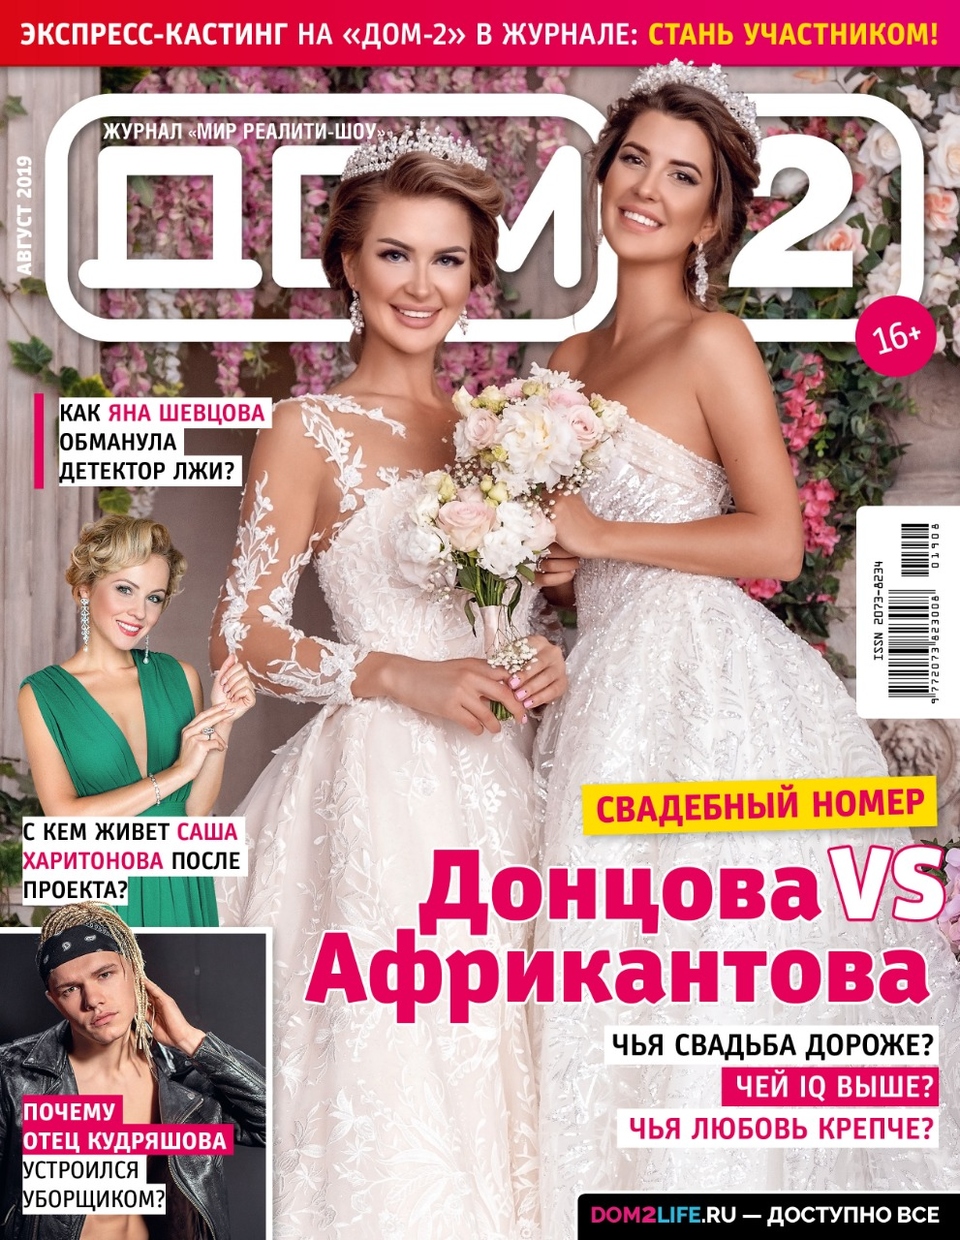 Августовский номер журнала «ДОМ-2» уже в&nbsp;продаже&nbsp; ​Фото: Журнал «ДОМ-2» 